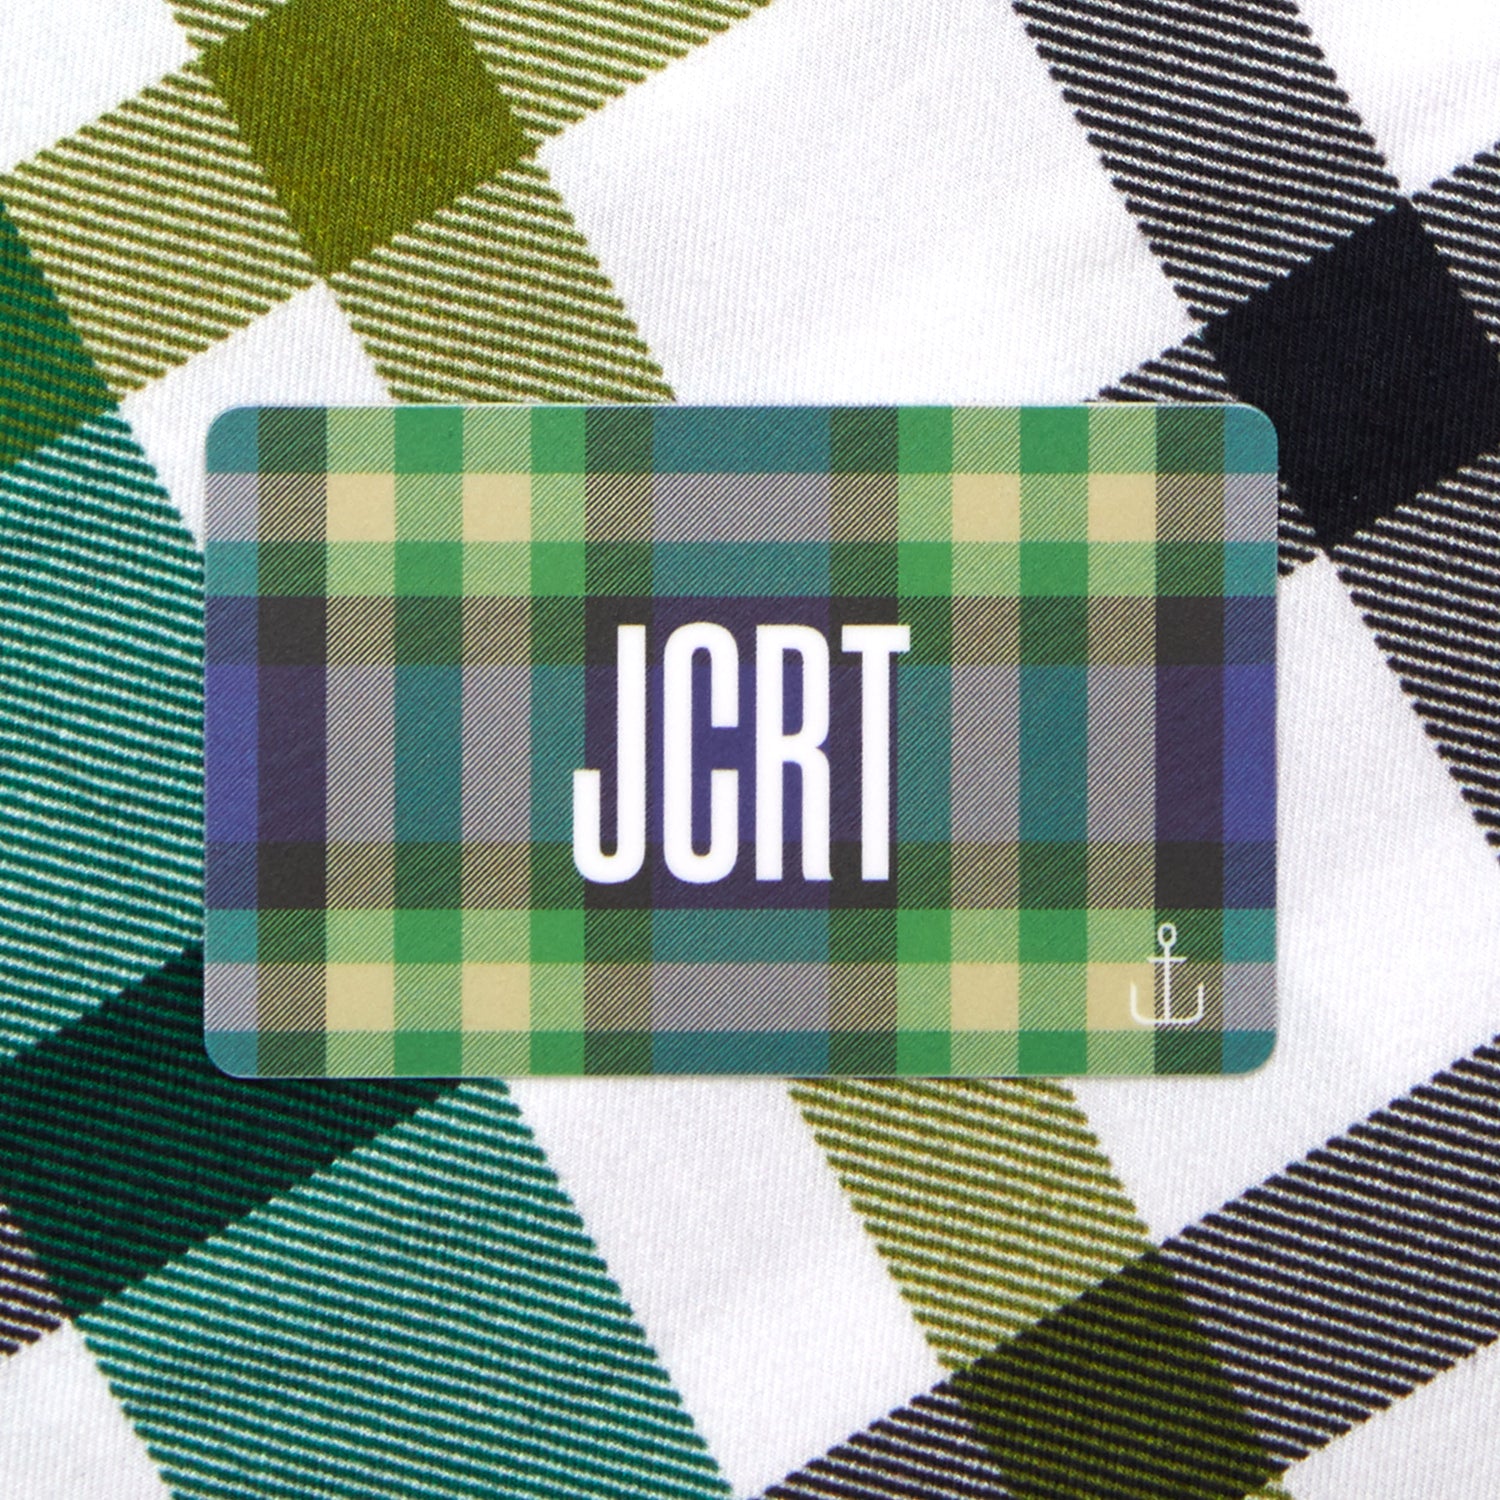 JCRT E-Gift Card